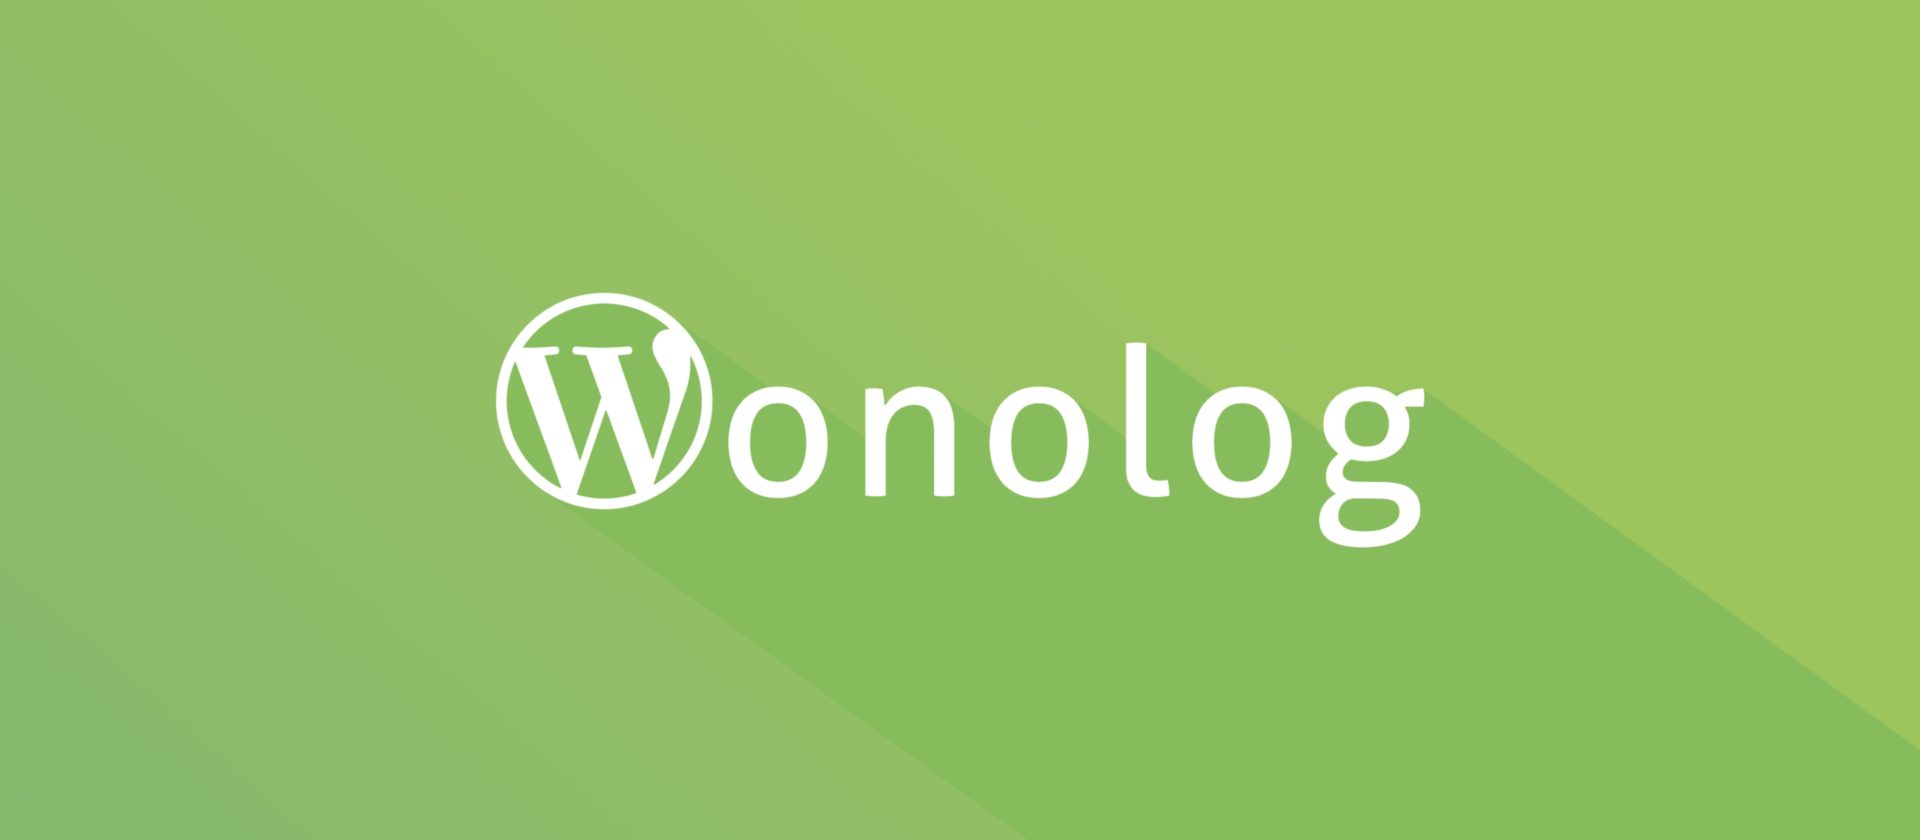 Wonolog logo